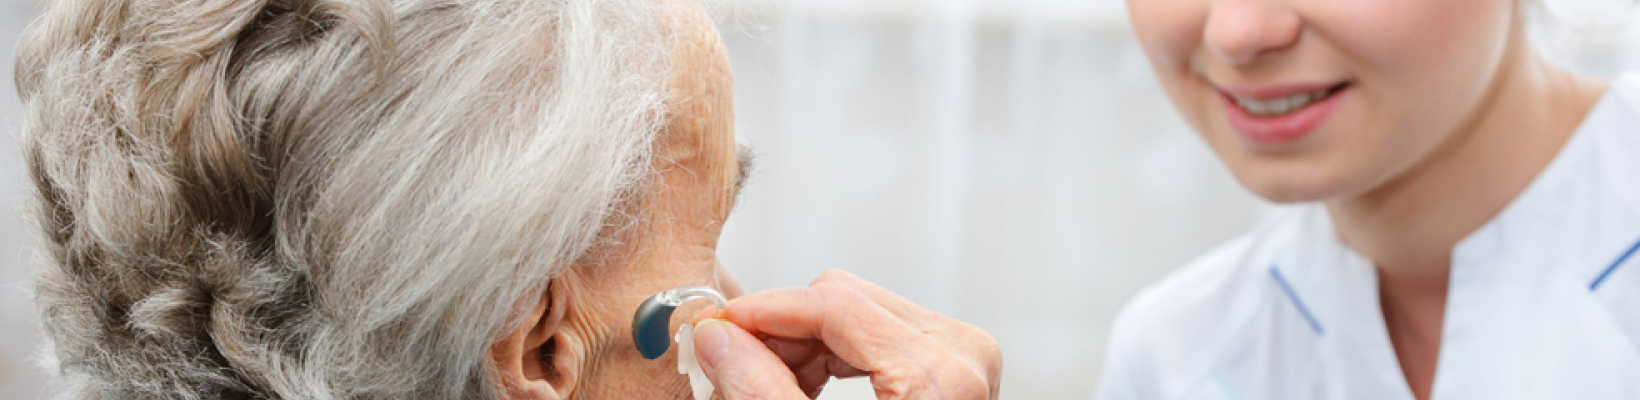 установка слухового аппарата пожилому человеку